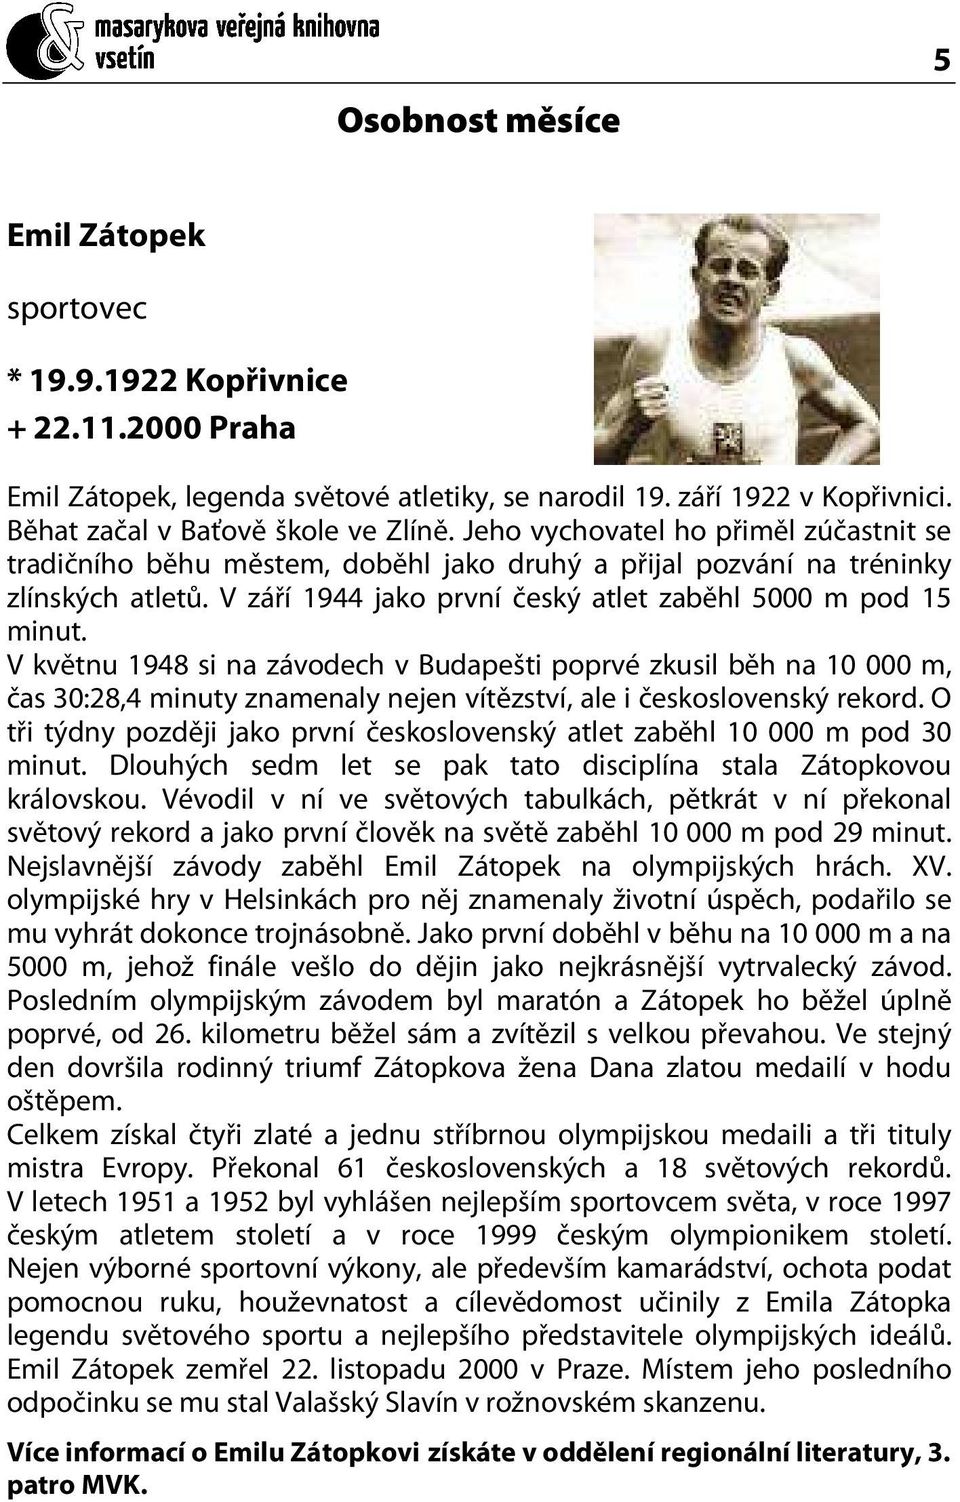 V květnu 1948 si na závodech v Budapešti poprvé zkusil běh na 10 000 m, čas 30:28,4 minuty znamenaly nejen vítězství, ale i československý rekord.